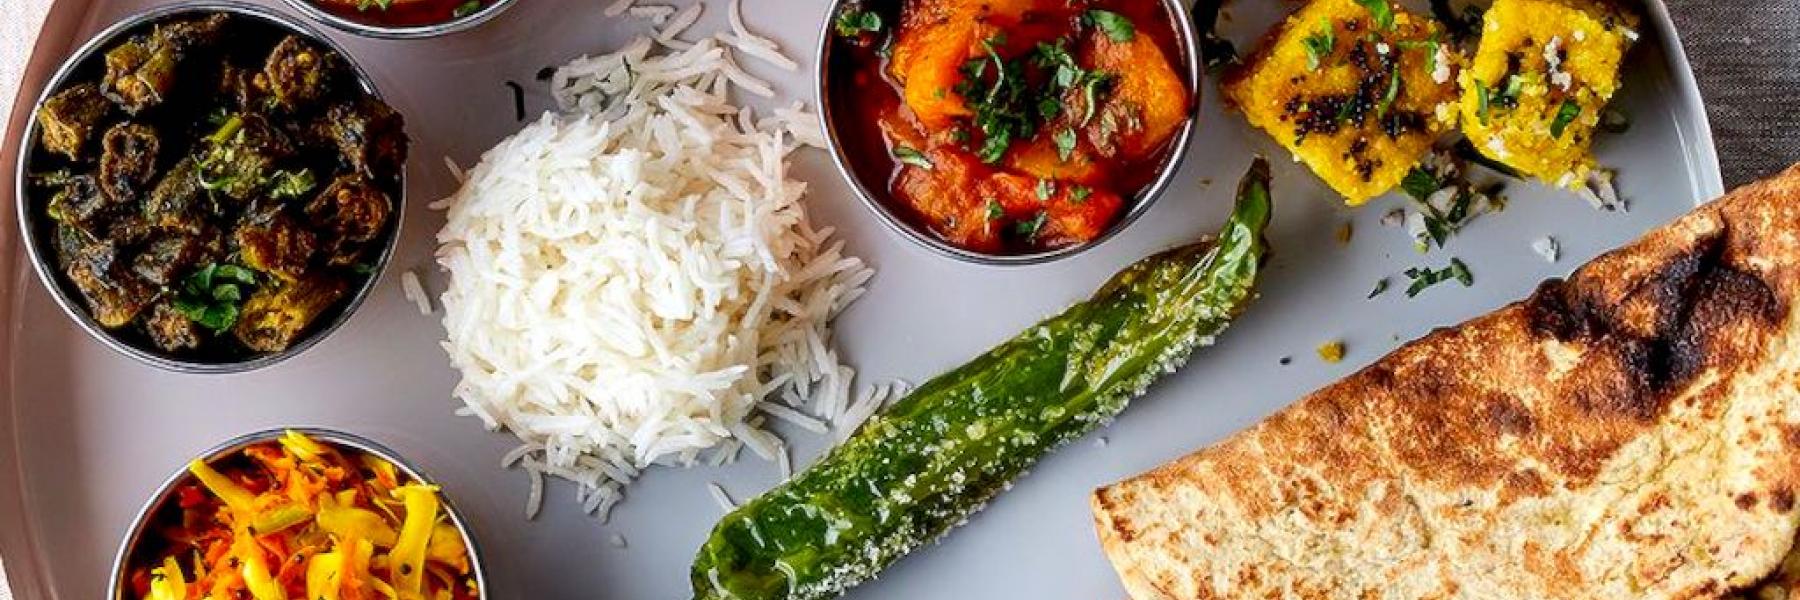 إليكِ 4 وصفات هندية شهية يمكنكِ الآن إعدادها في المنزل بكل سهولة